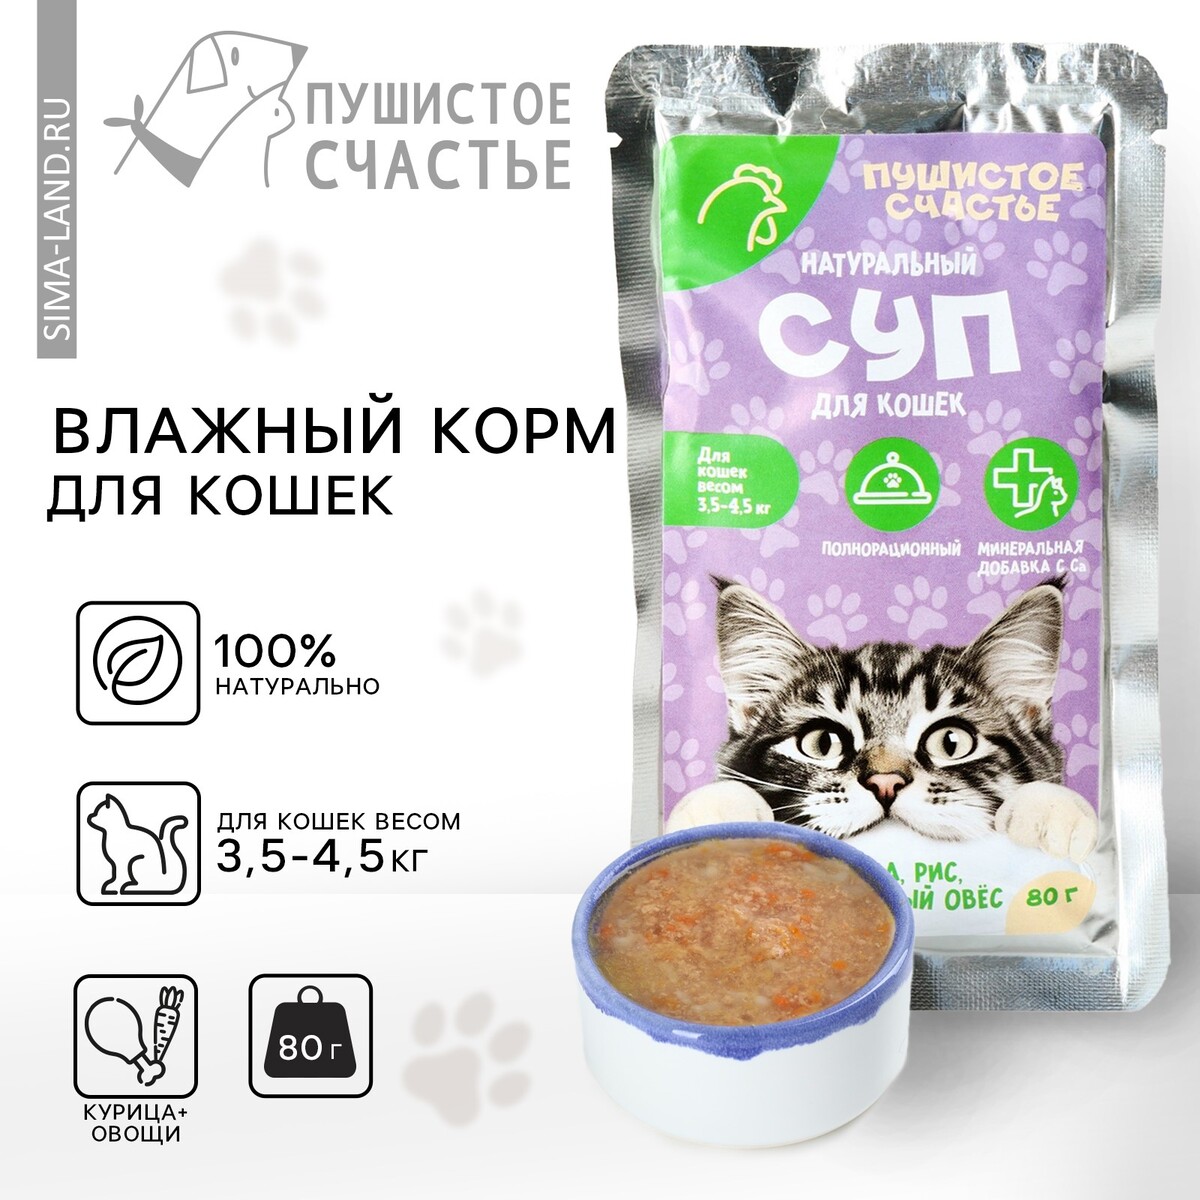 Влажный корм пушистое счастье беззерновой суп с курицей и рисом, для кошек, 80 г. планета кошек